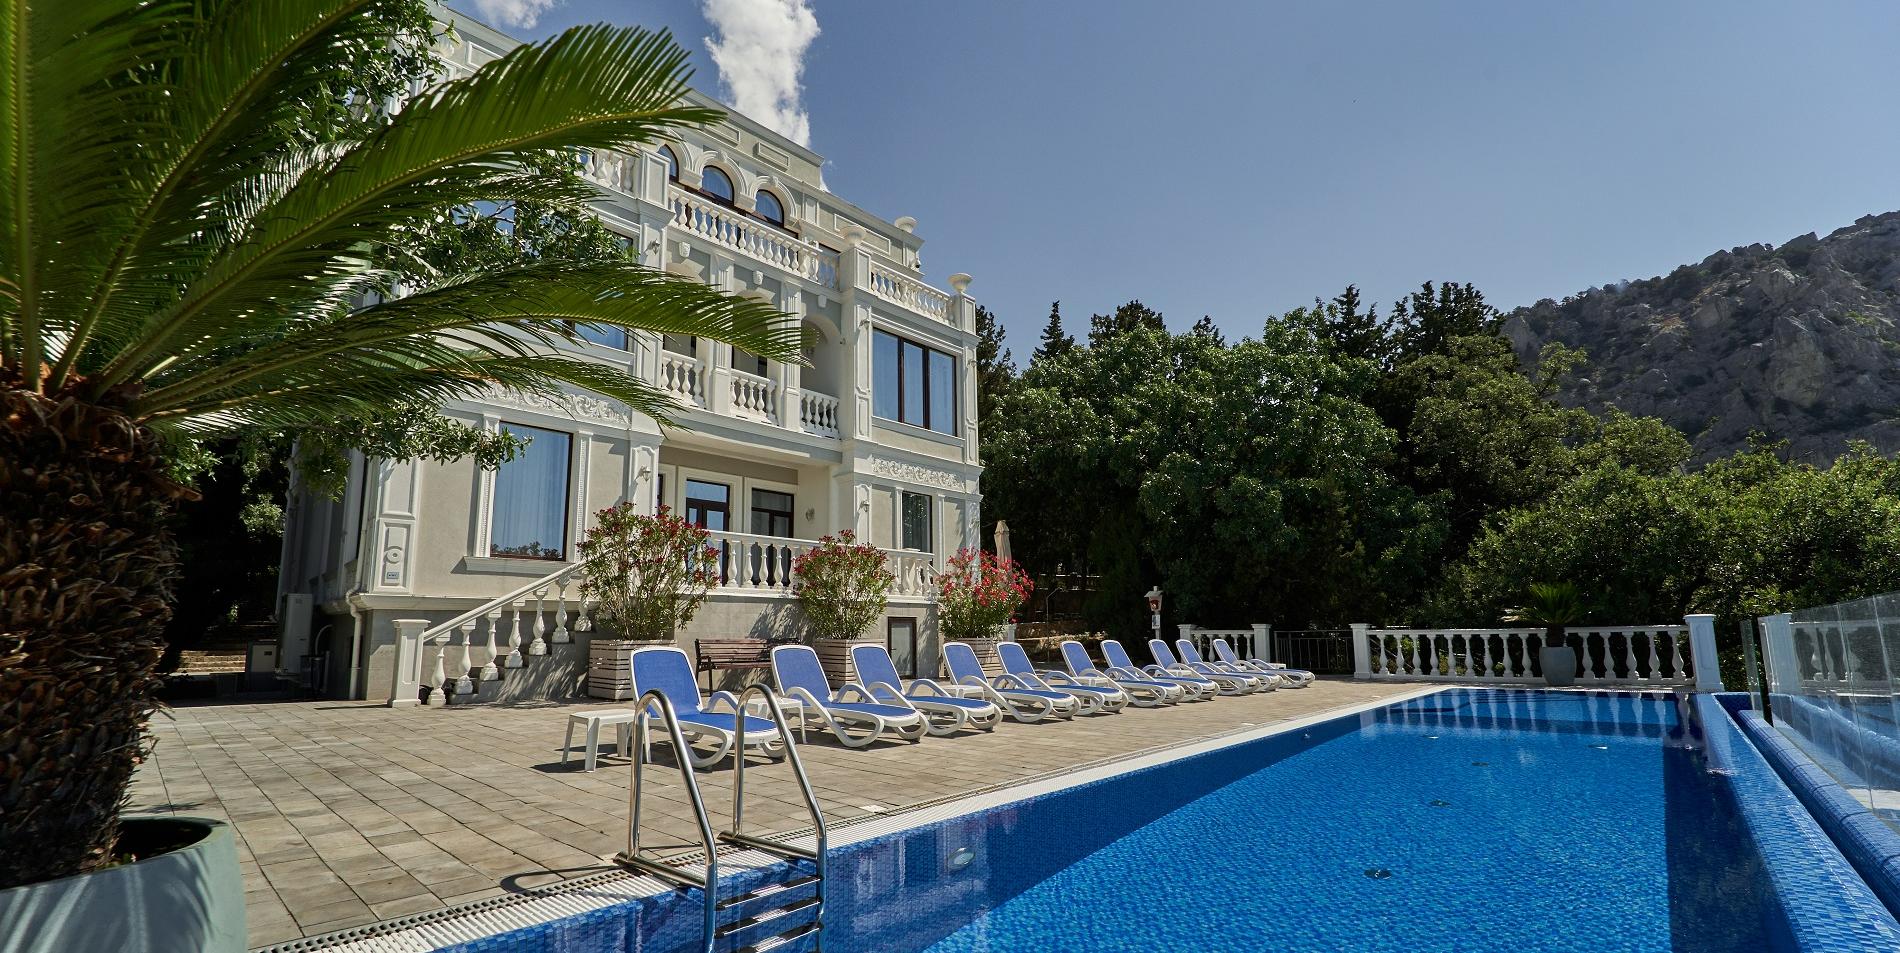 Где остановиться в Крыму — лучшие отели Ялты, работающие круглогодично